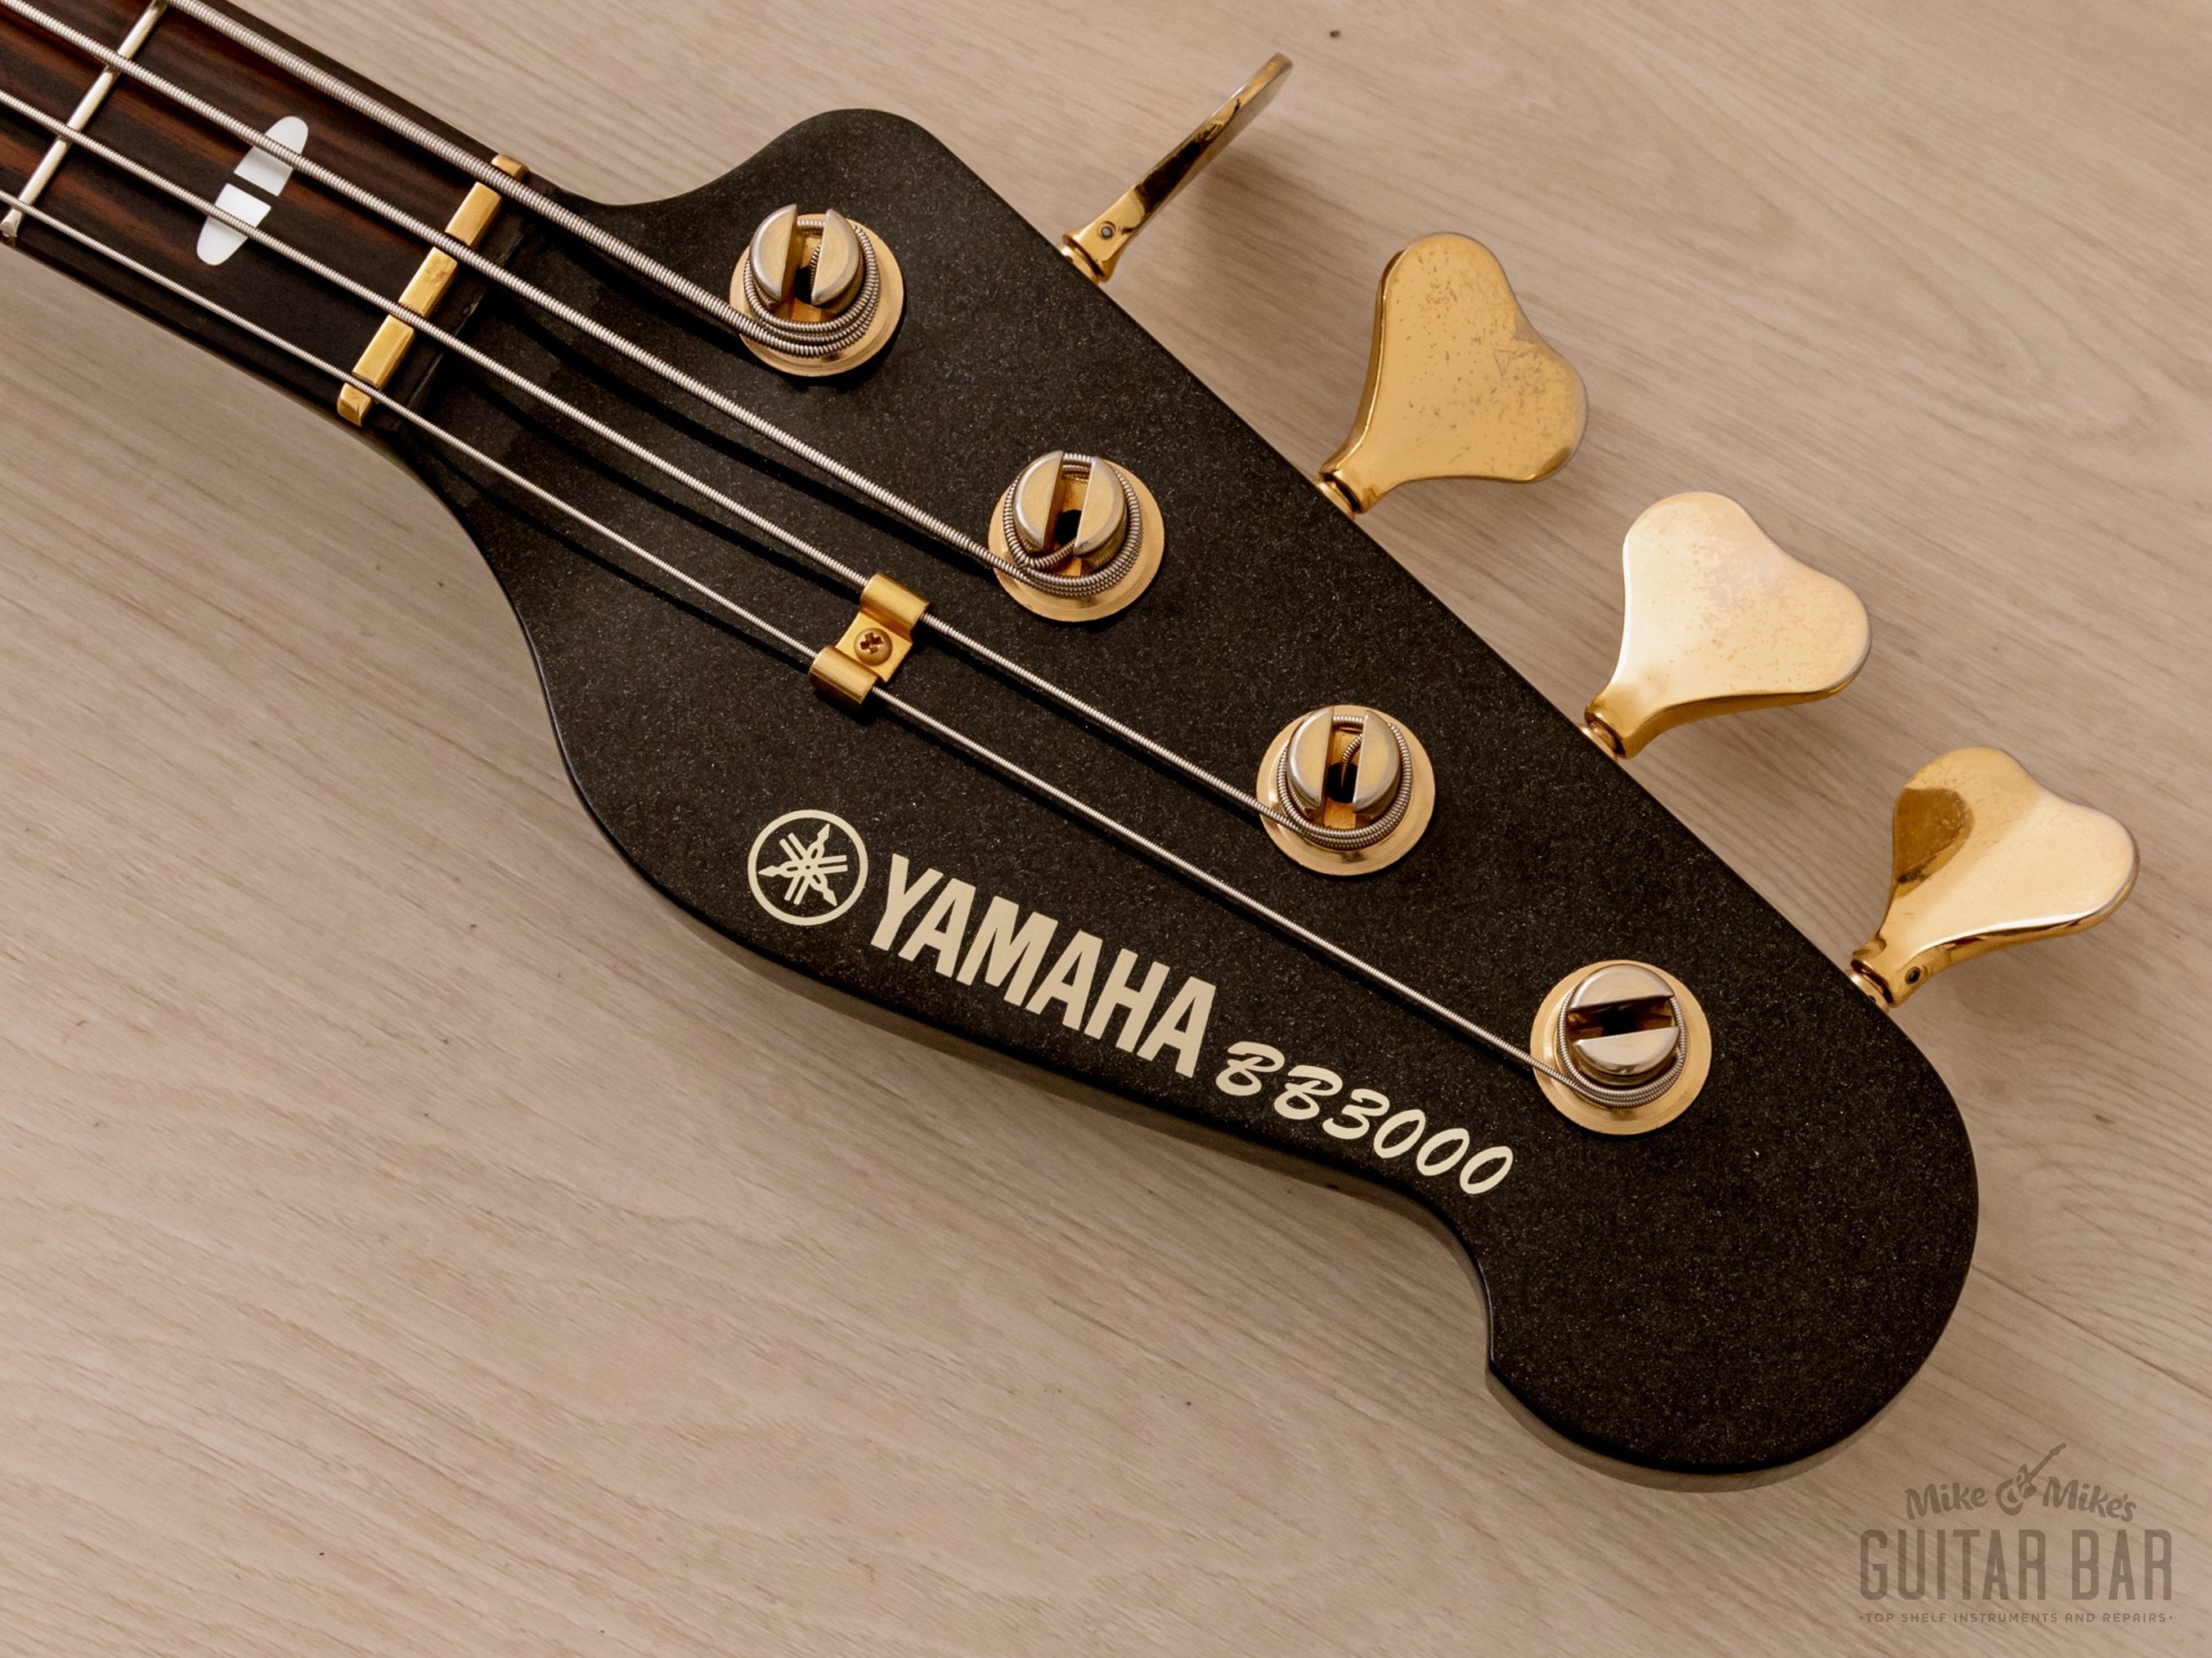 1983 Yamaha Broad Bass BB3000 Vintage Neck Through PJ Bass Guitar Metallic Black, Japan